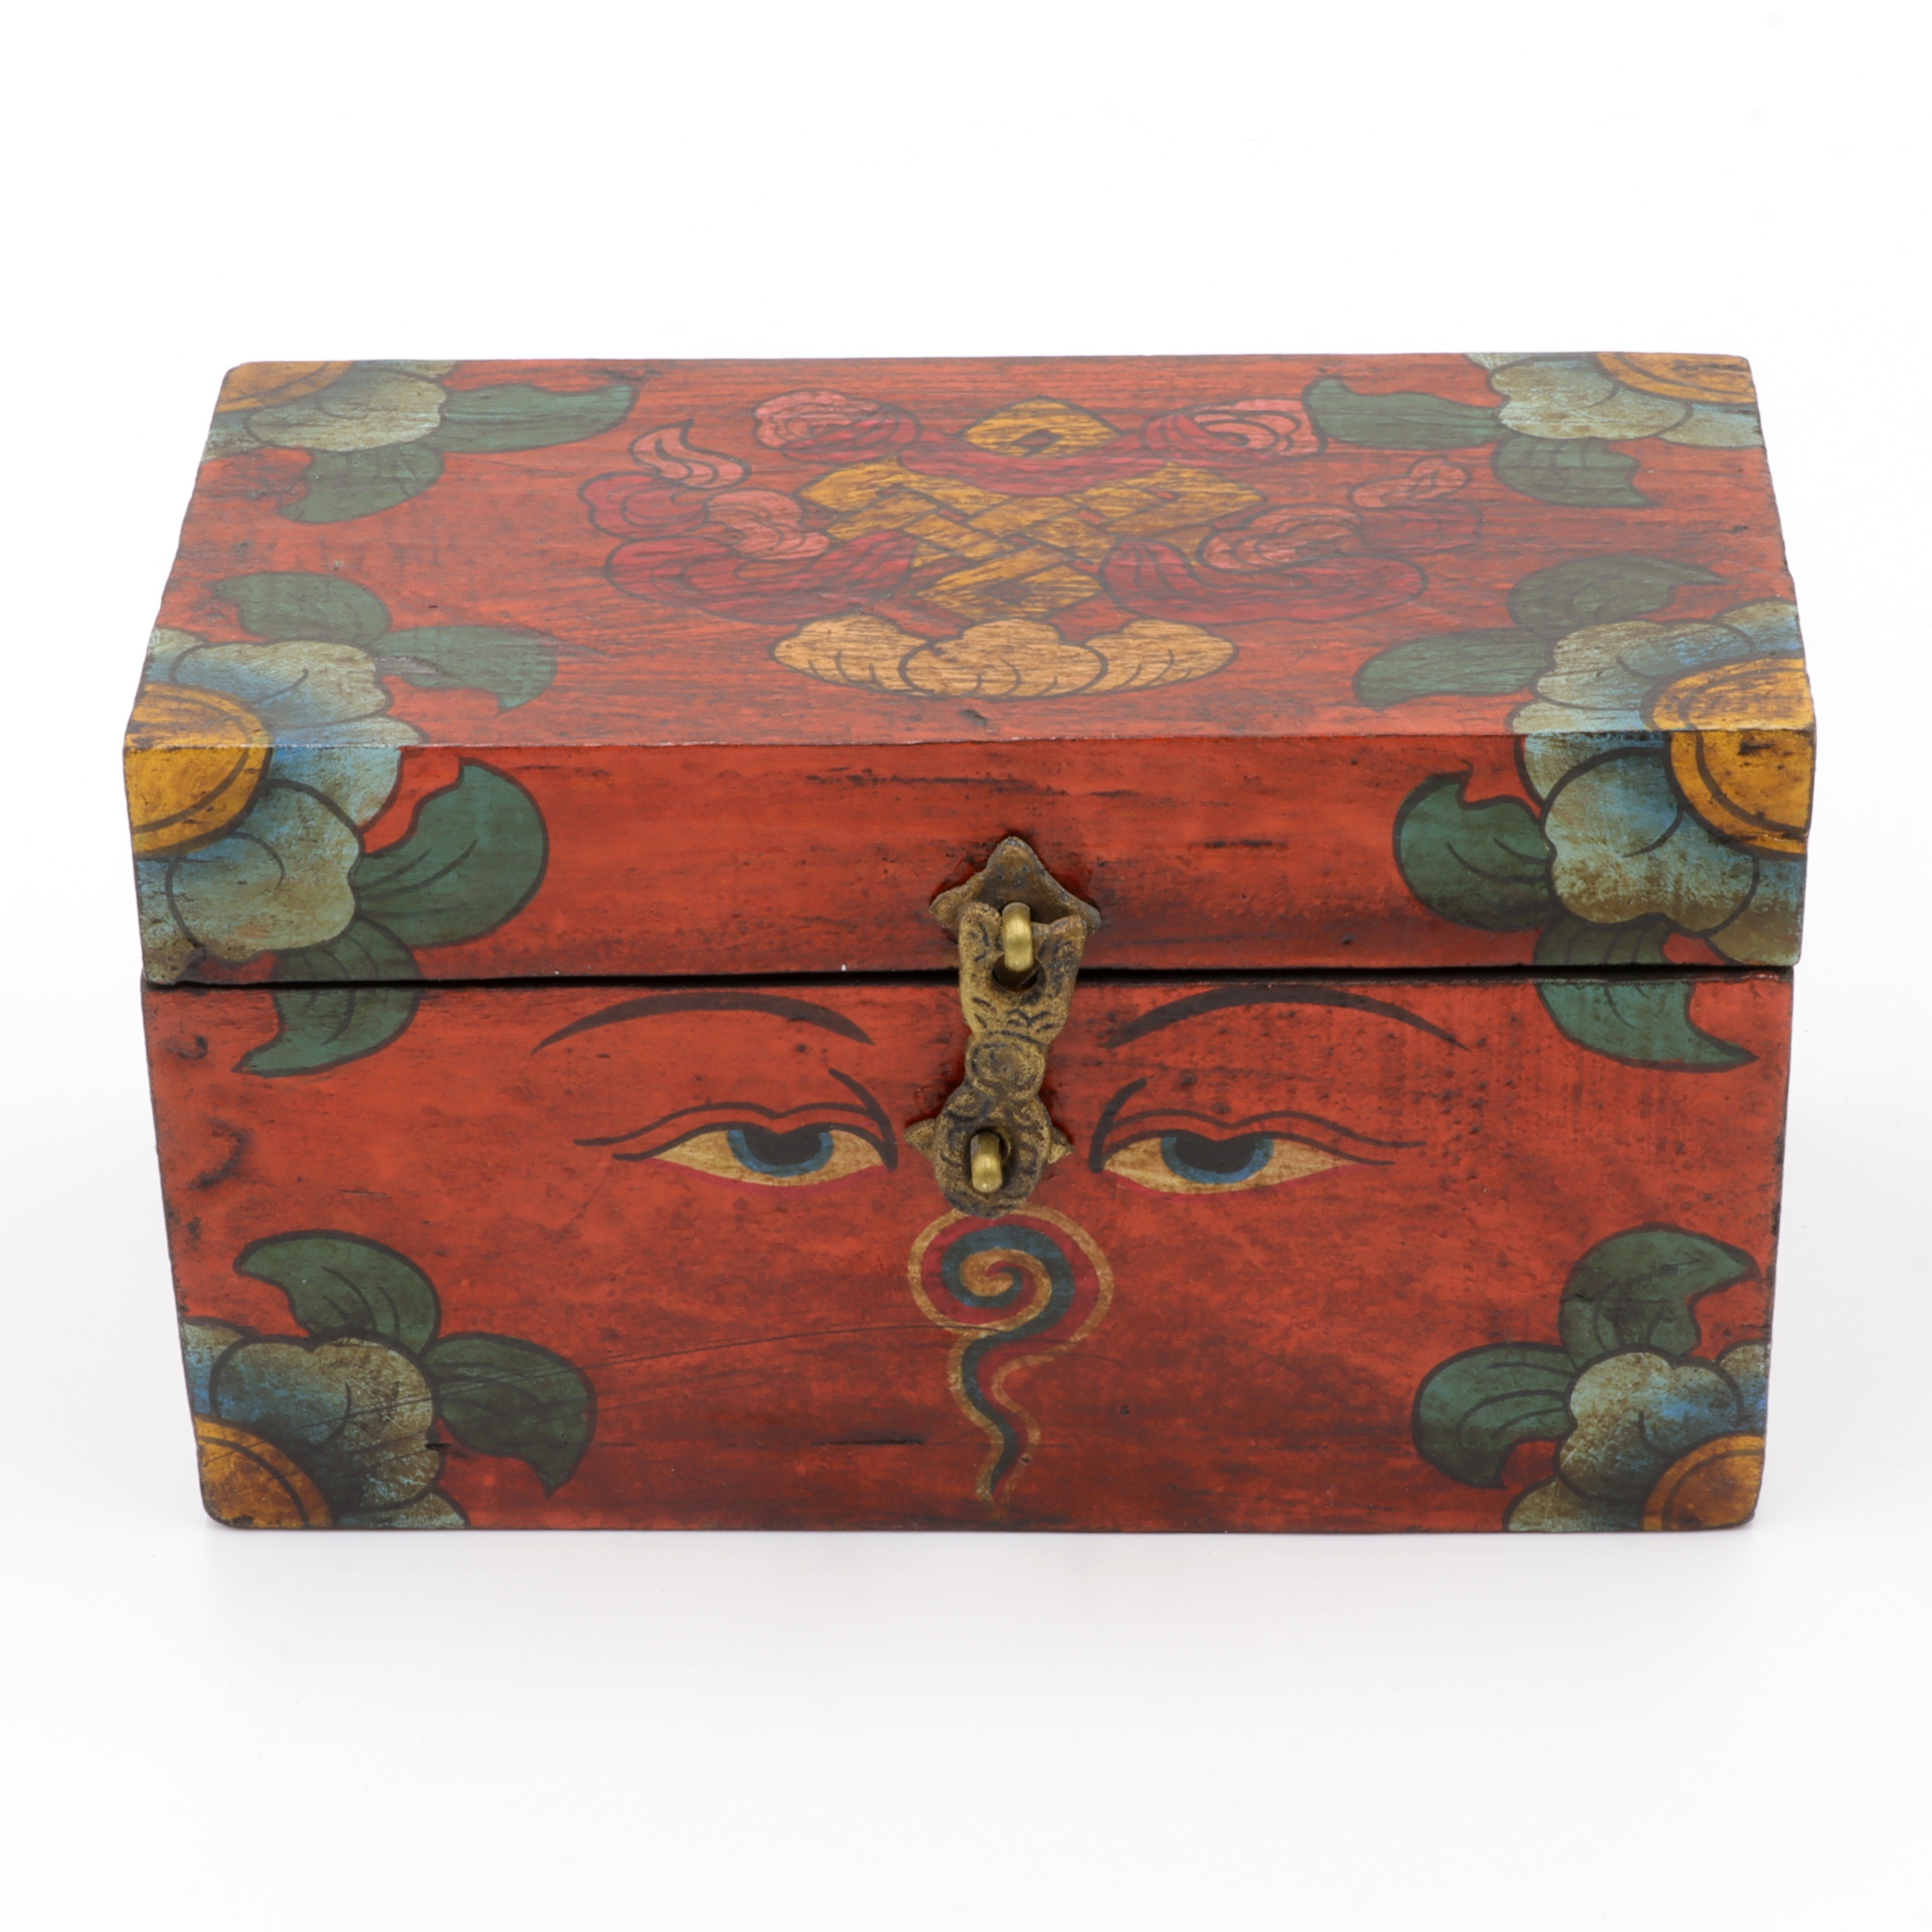 Handbemalte Kiste aus Holz -  Buddha Eyes, Endlosknoten, Ashtamangala - Truhen Design - typisch nepalesiche Farben - fair gehandelt aus Nepal